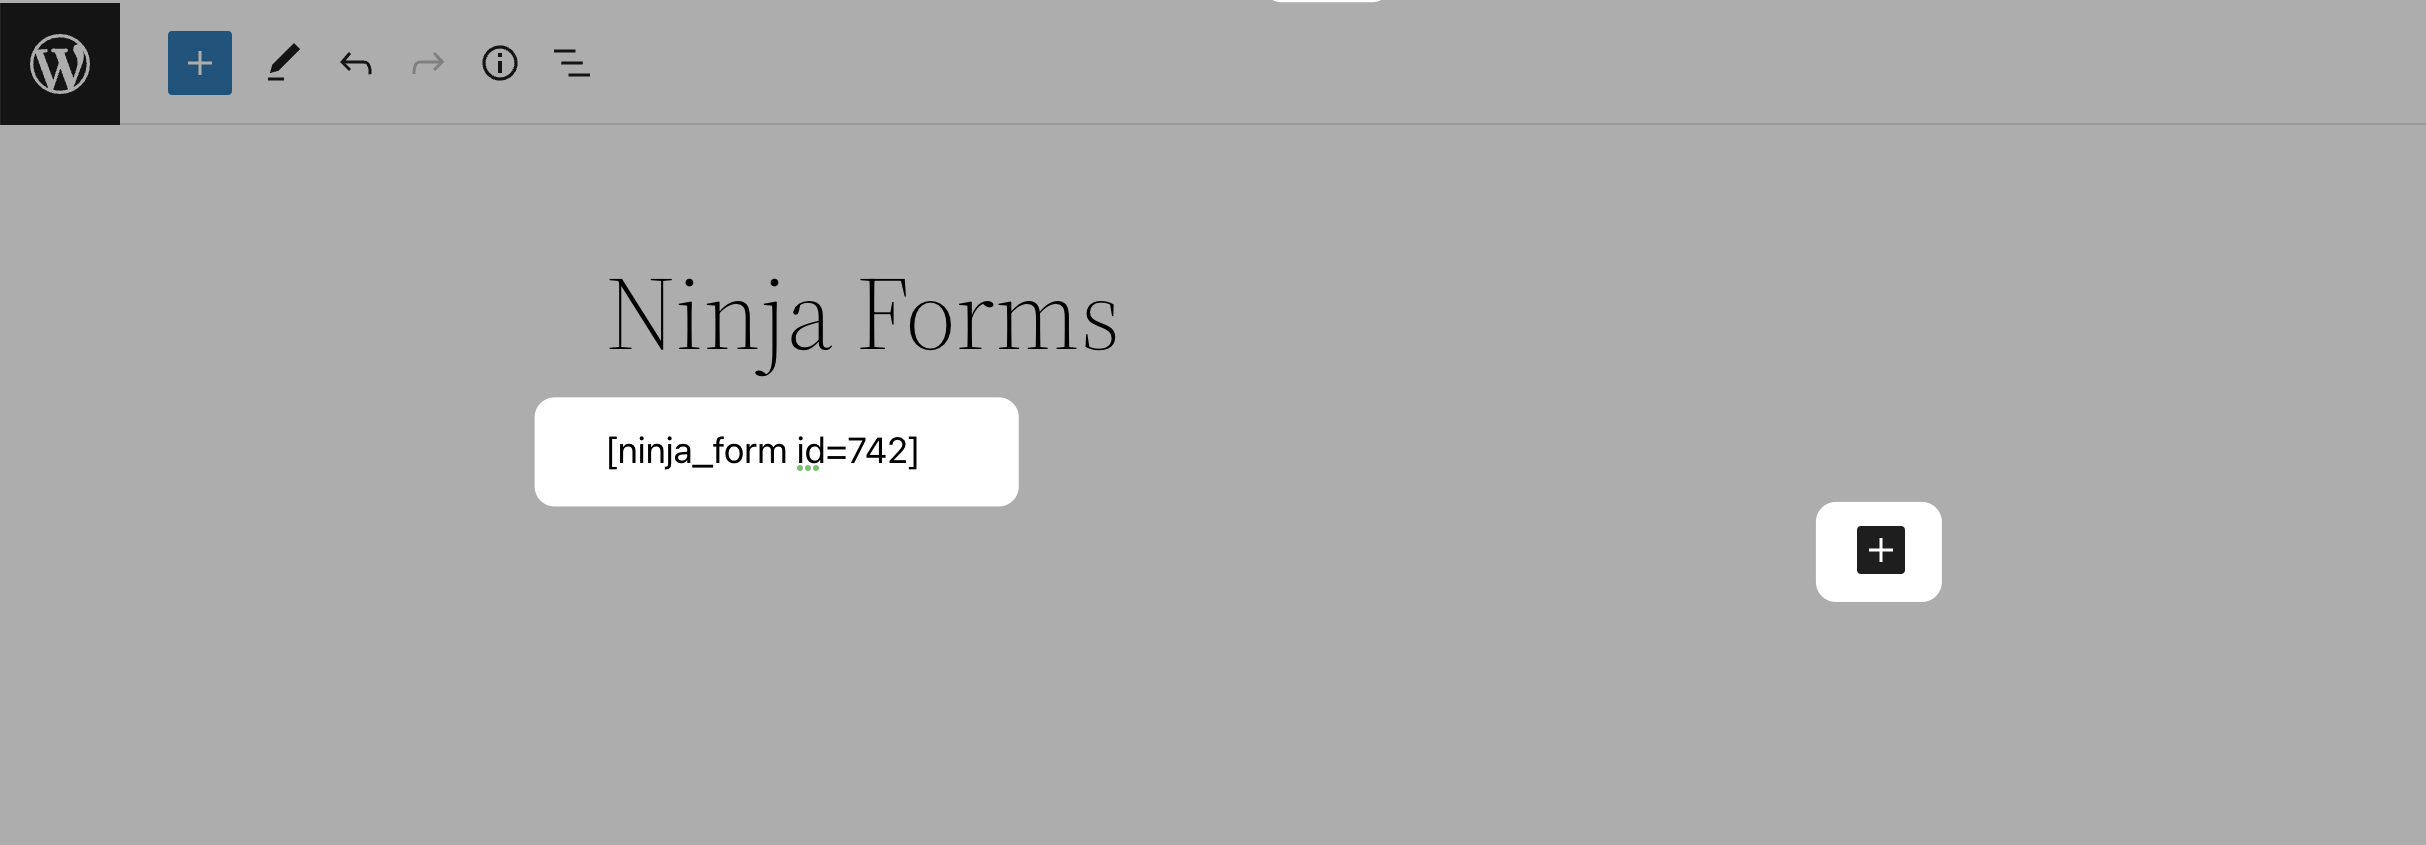 Make a WordPress Contact Form with Ninja Forms - Ninja Forms